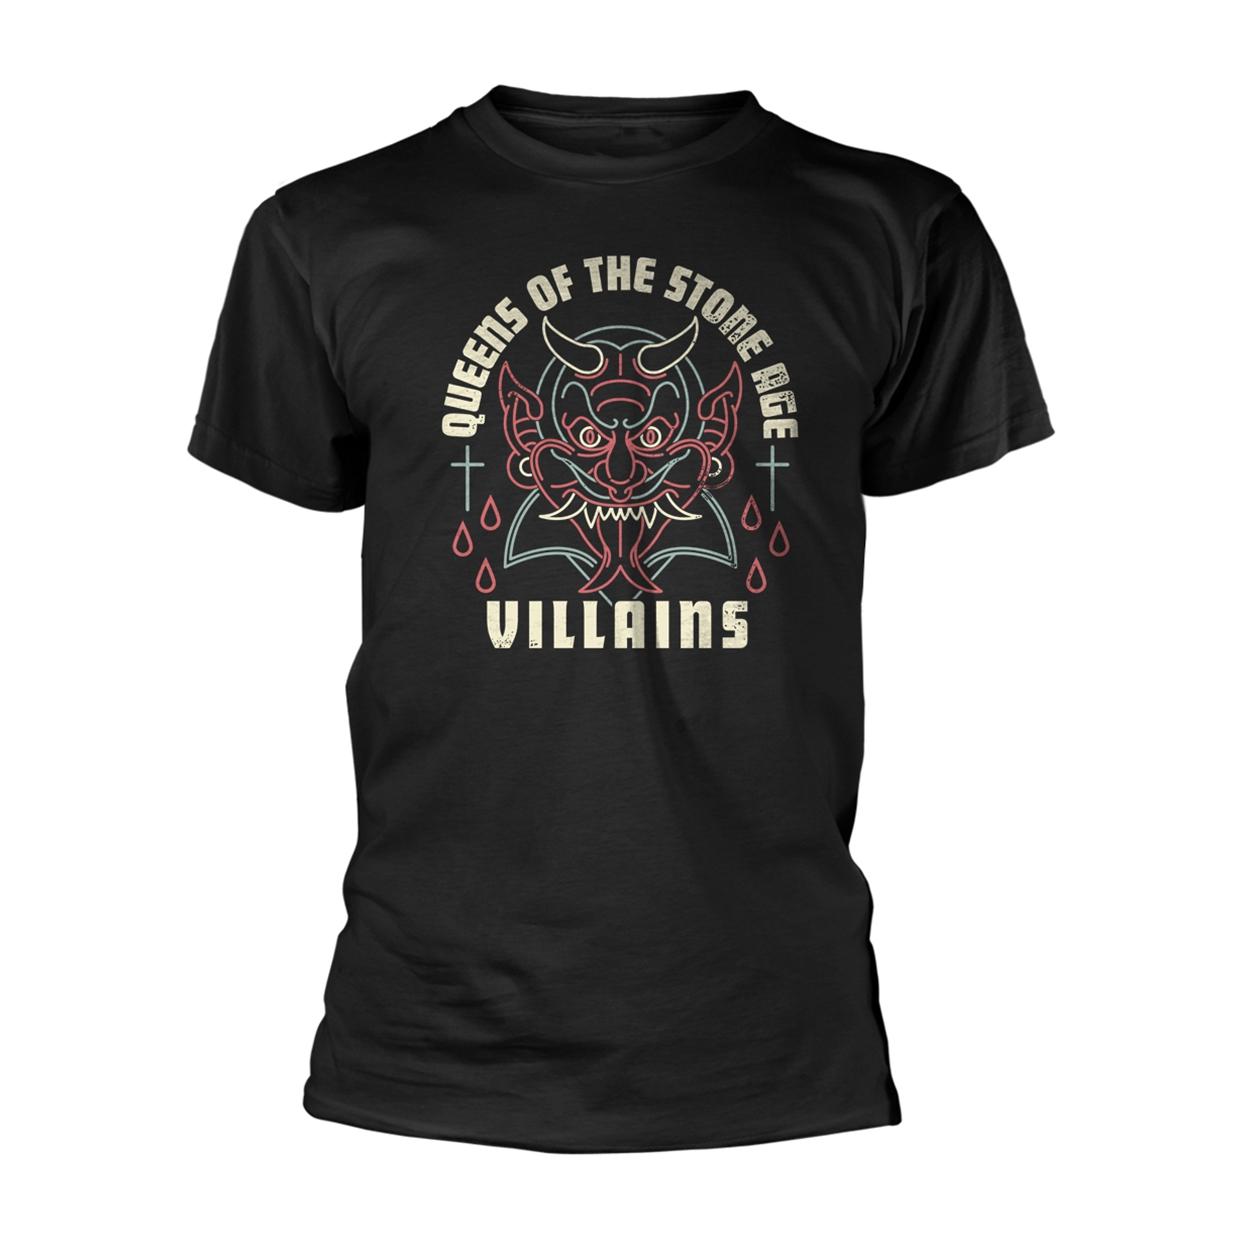 (クイーンズ・オブ・ザ・ストーン・エイジ) Queens Of The Stone Age オフィシャル商品 ユニセックス Villains Tシャツ 半袖 トップス 【海外通販】